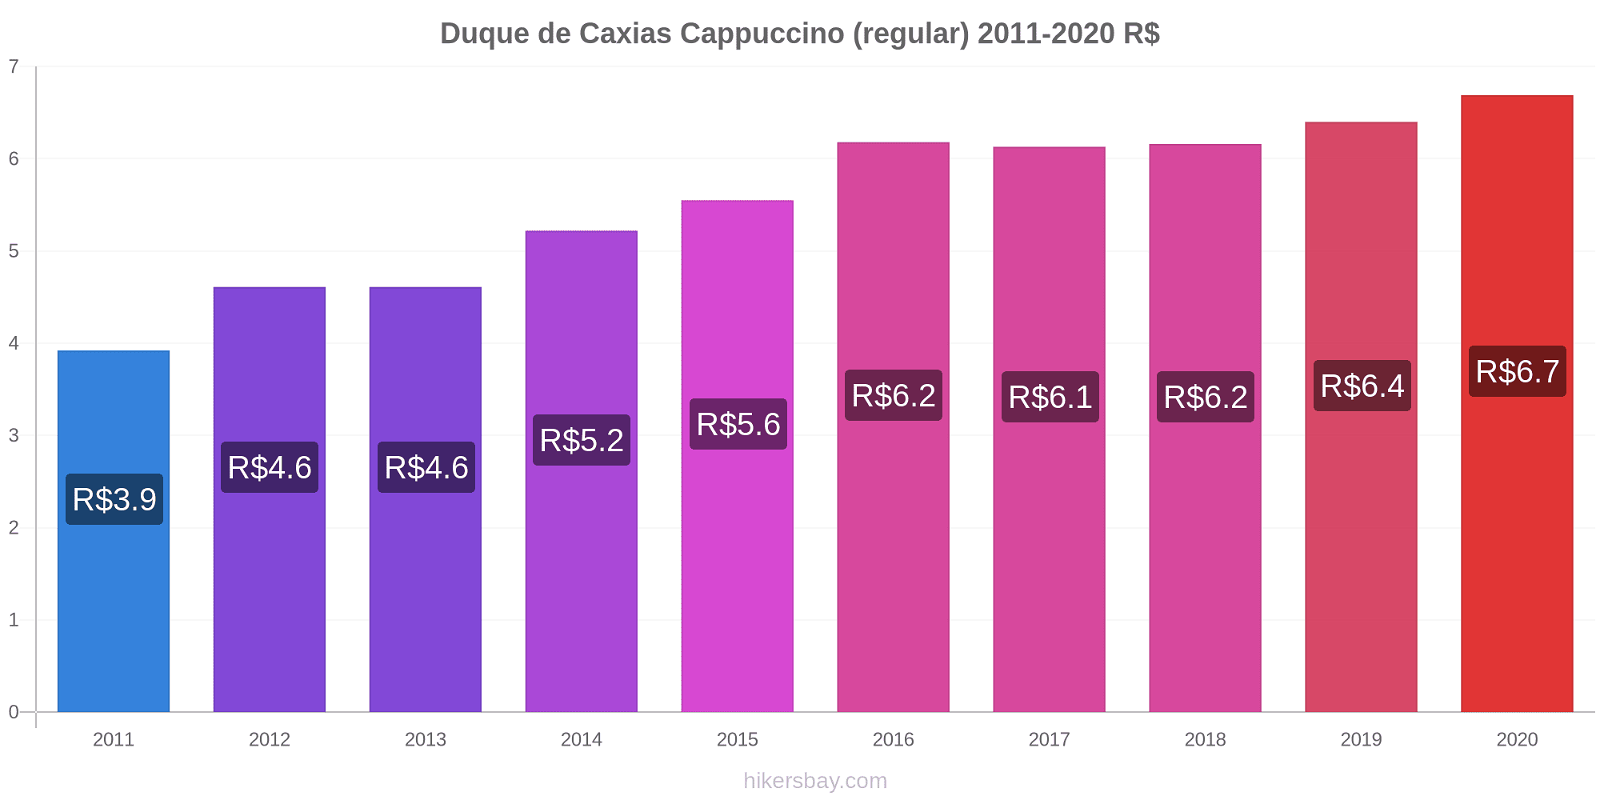 Duque de Caxias variação de preço Capuccino (regular) hikersbay.com